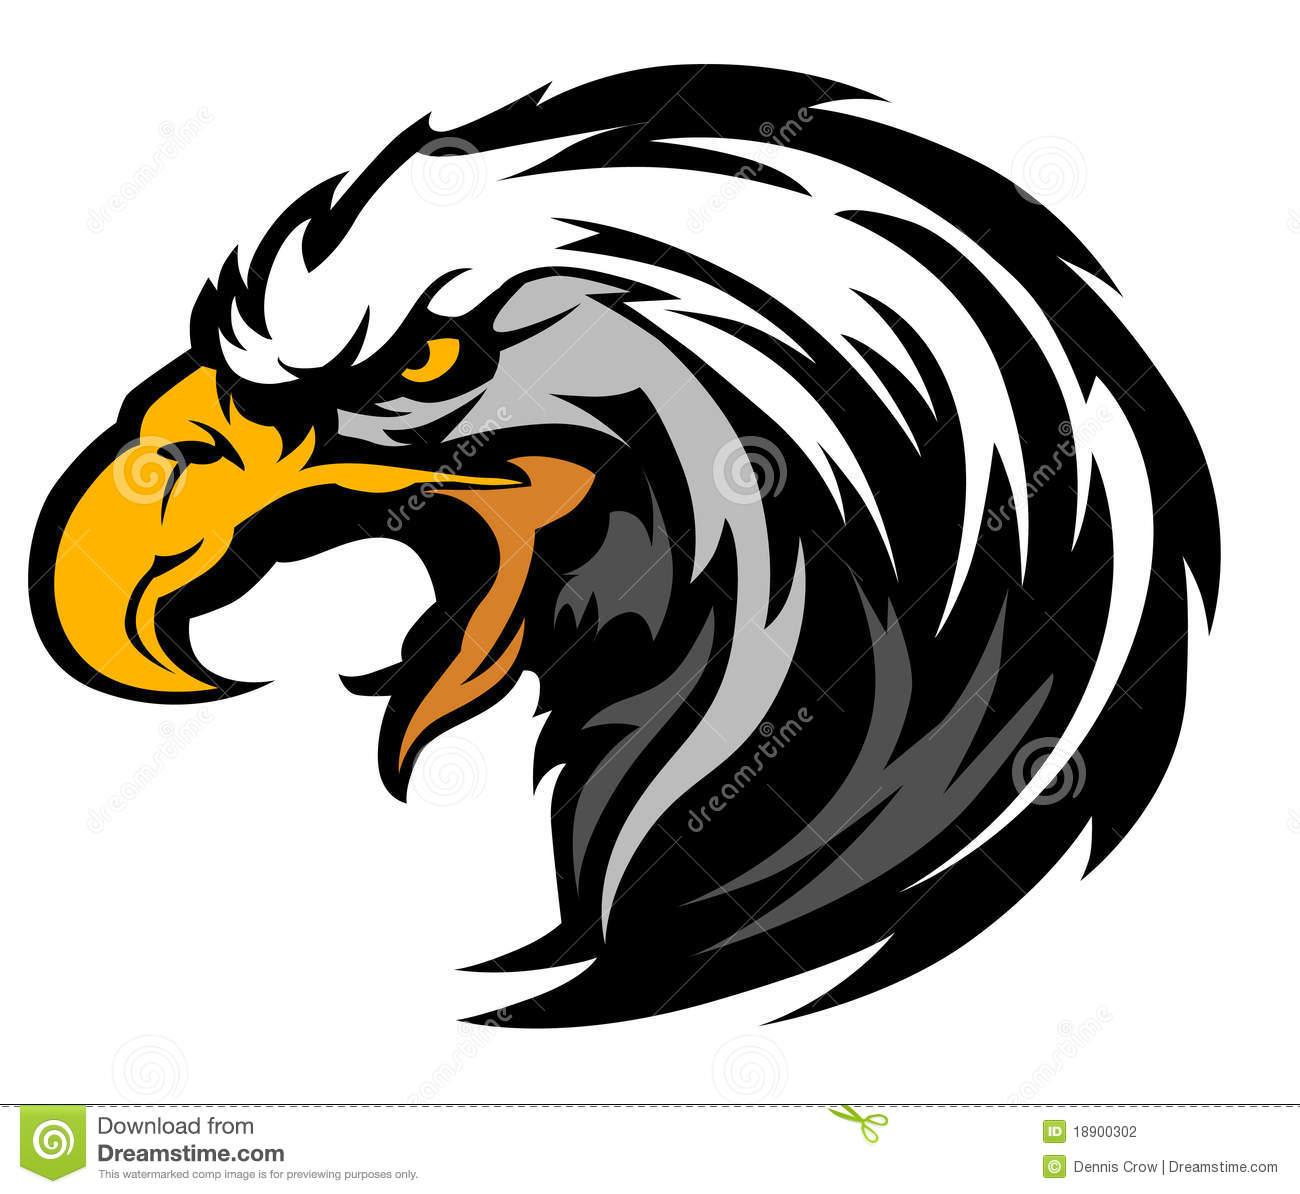 Clip Art Eagles Logo - Eagles logo clipart - AbeonCliparts | Cliparts & Vectors